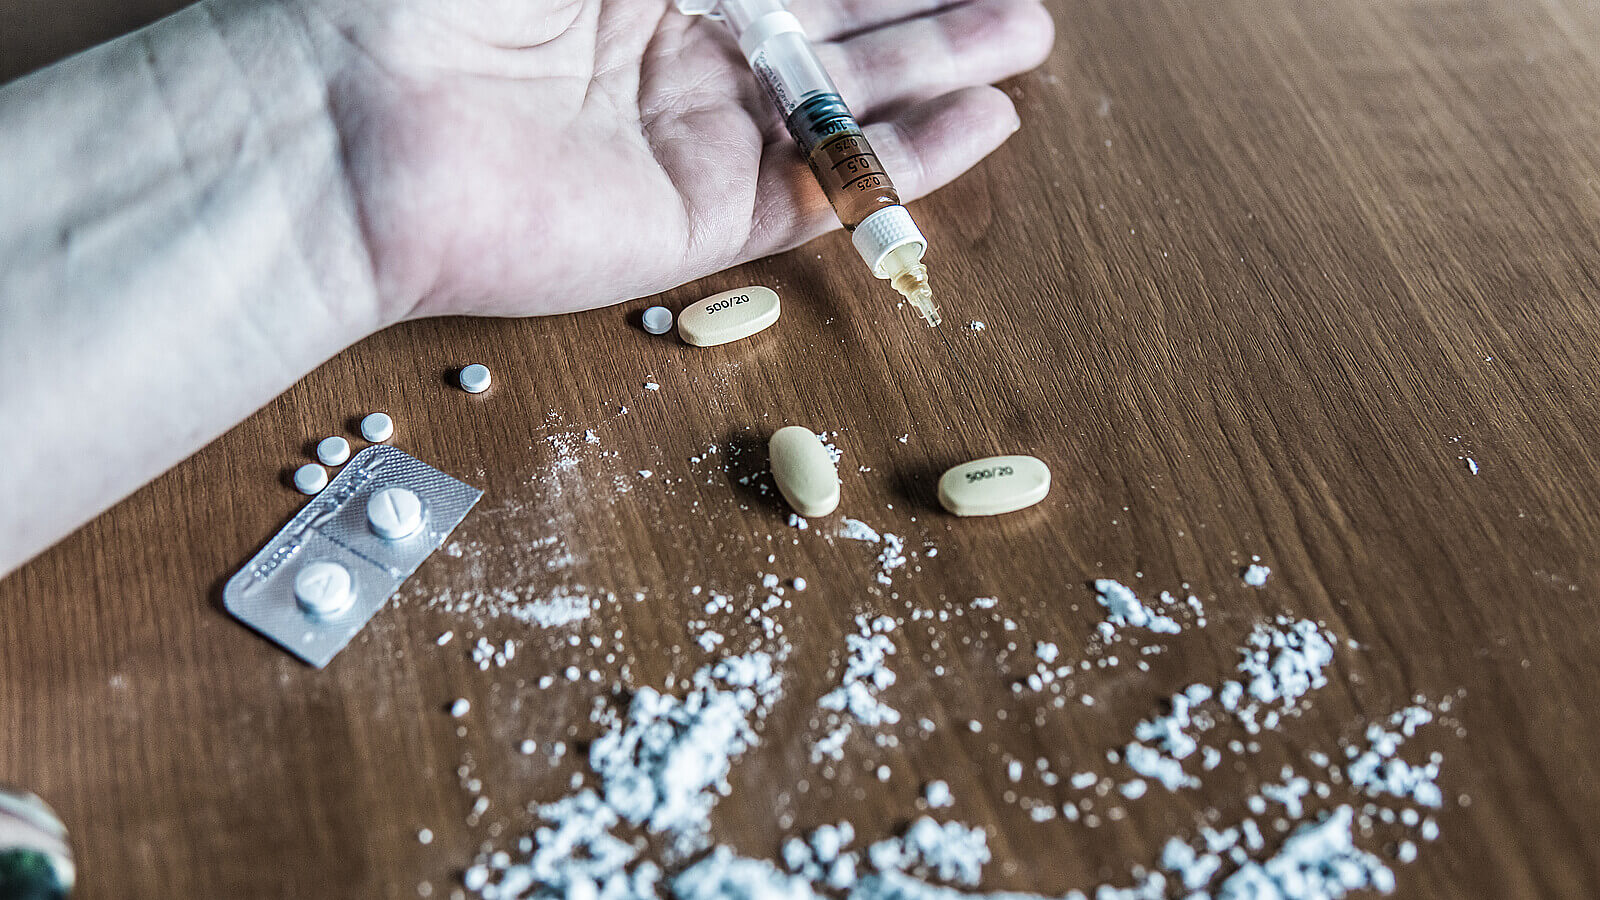 La crisis por el consumo de fentanilo aumenta en la frontera de México y EE.UU. | Shutterstock